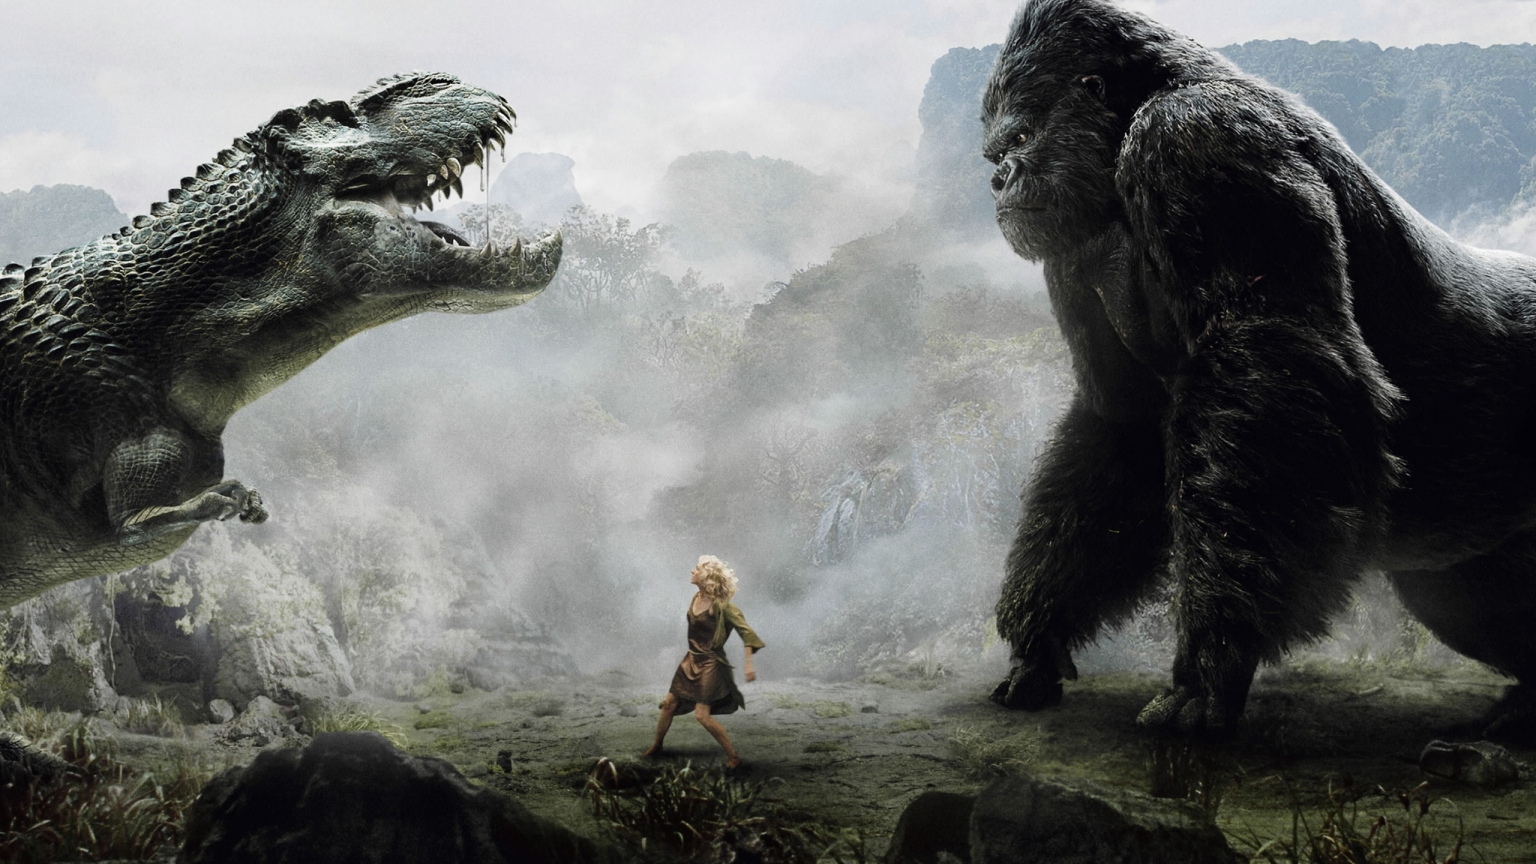 King Kong vs Dinosaur for 1536 x 864 HDTV resolution